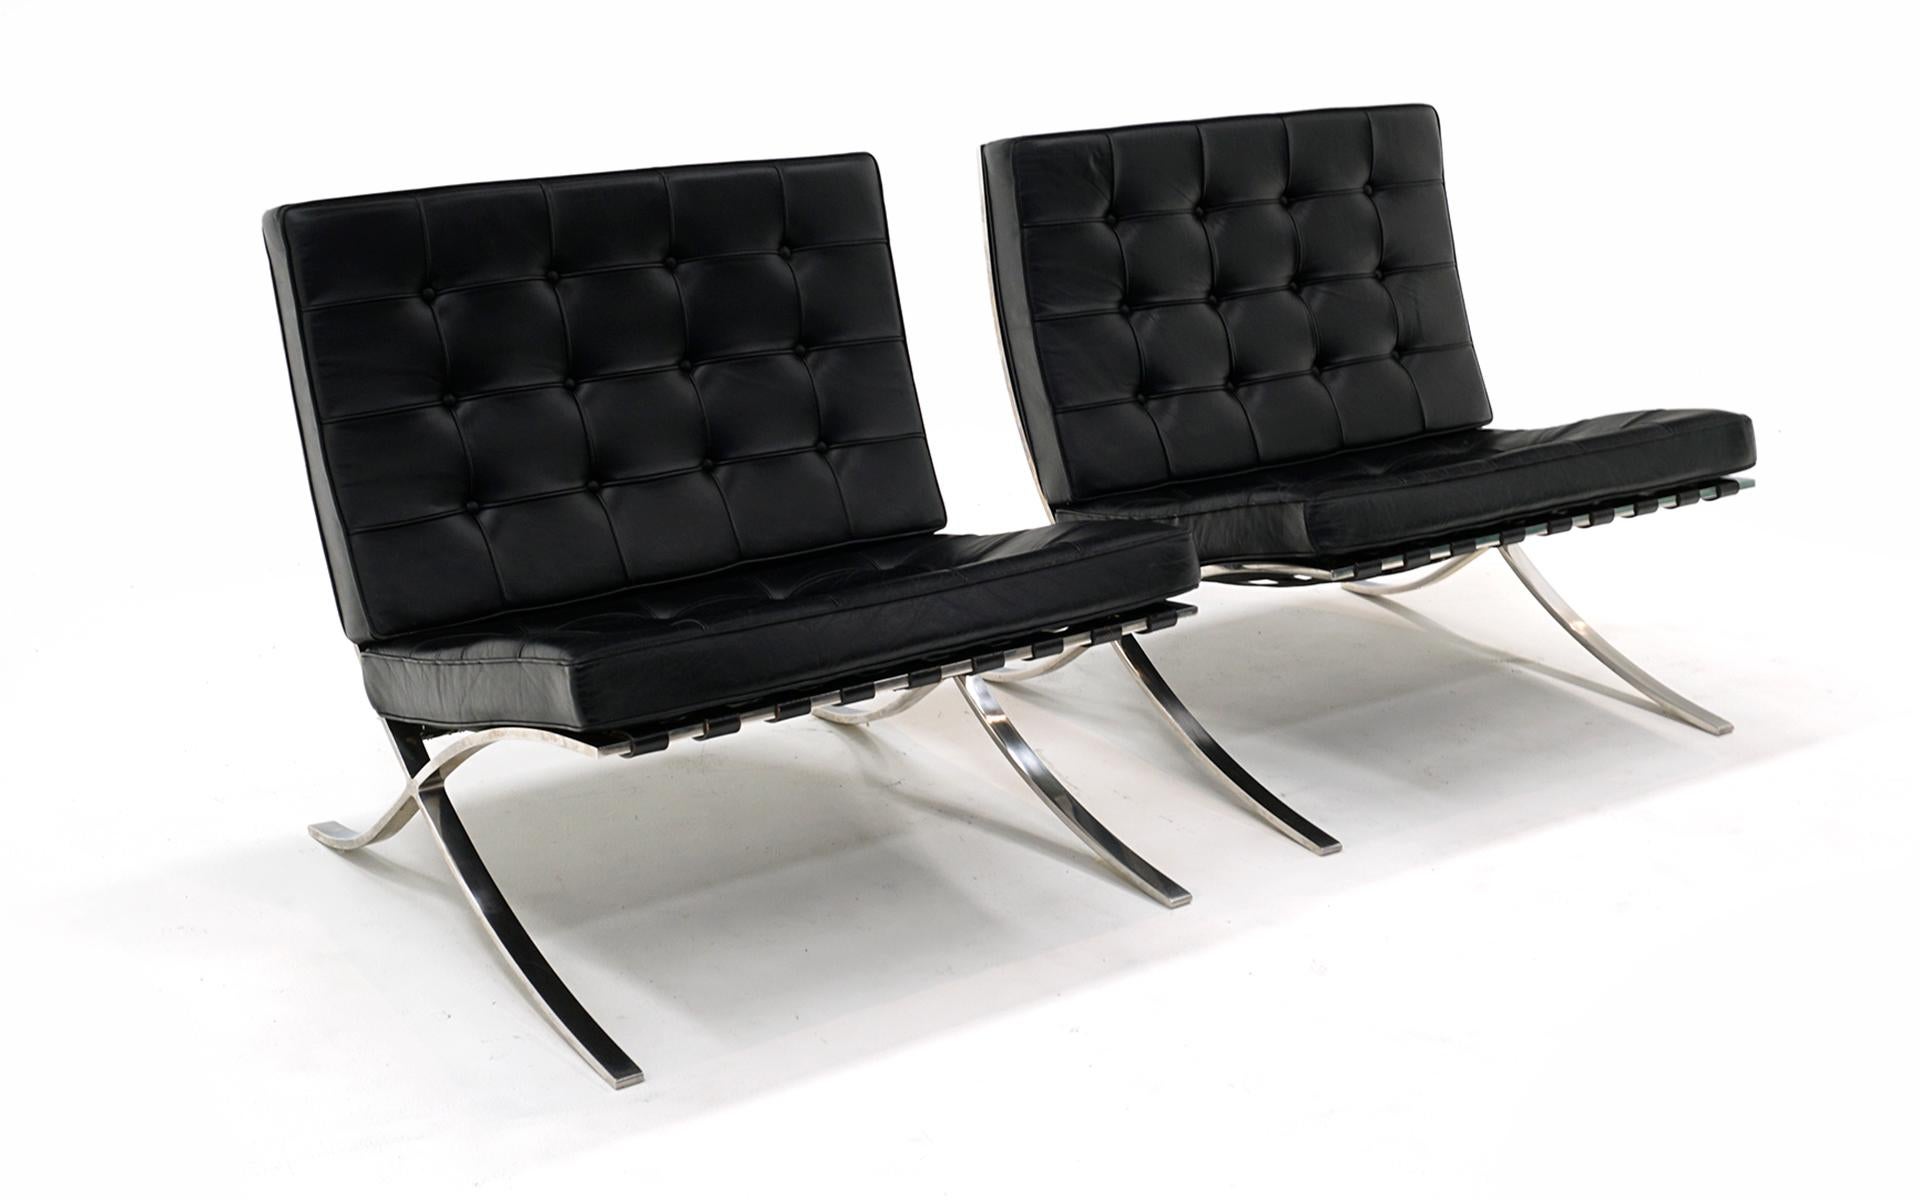 Paire de chaises Barcelona en cuir noir et acier inoxydable poli à la main, d'un style classique et intemporel.   Conçue par Mies van de Rohe en 1929, cette paire a été produite dans les années 1970.  Très bon état, sans déchirures, trous ou